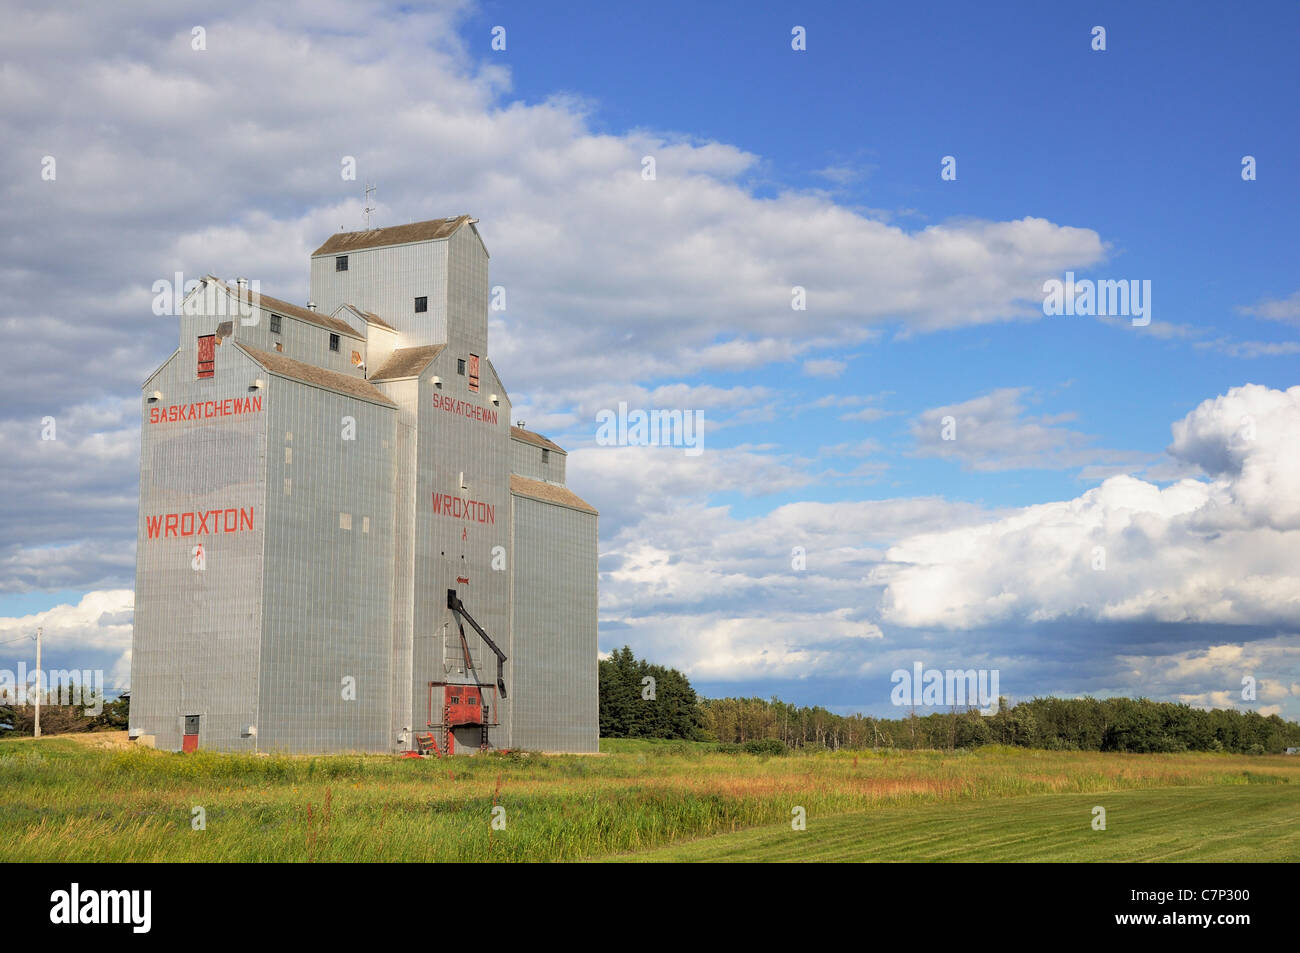 A wooden grey grain elevator in Saskatchewan, Canada Stock Photo